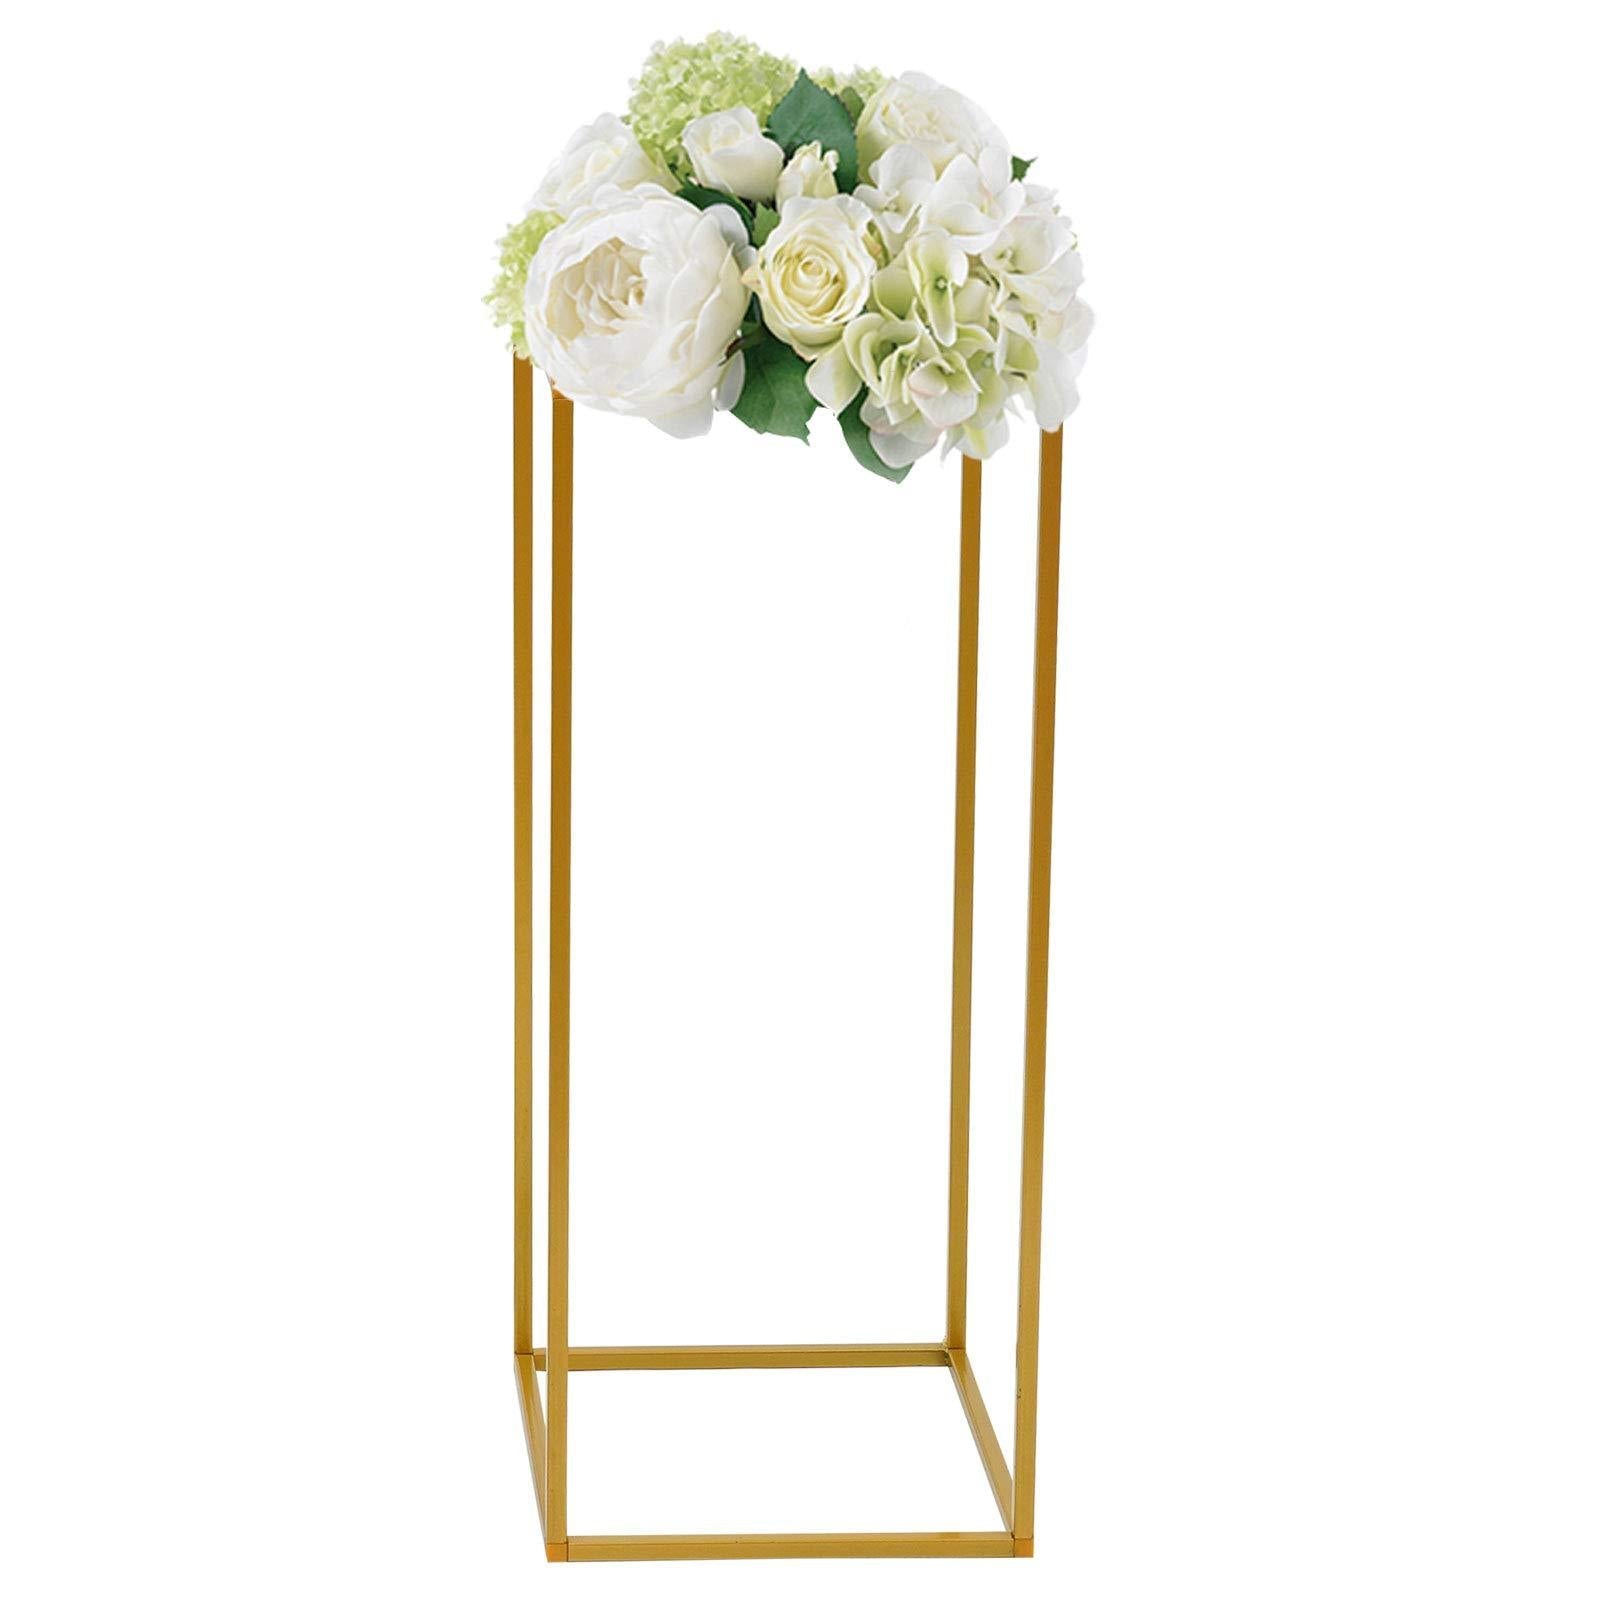 Support colonne en vases géométriques pour décoration de mariage